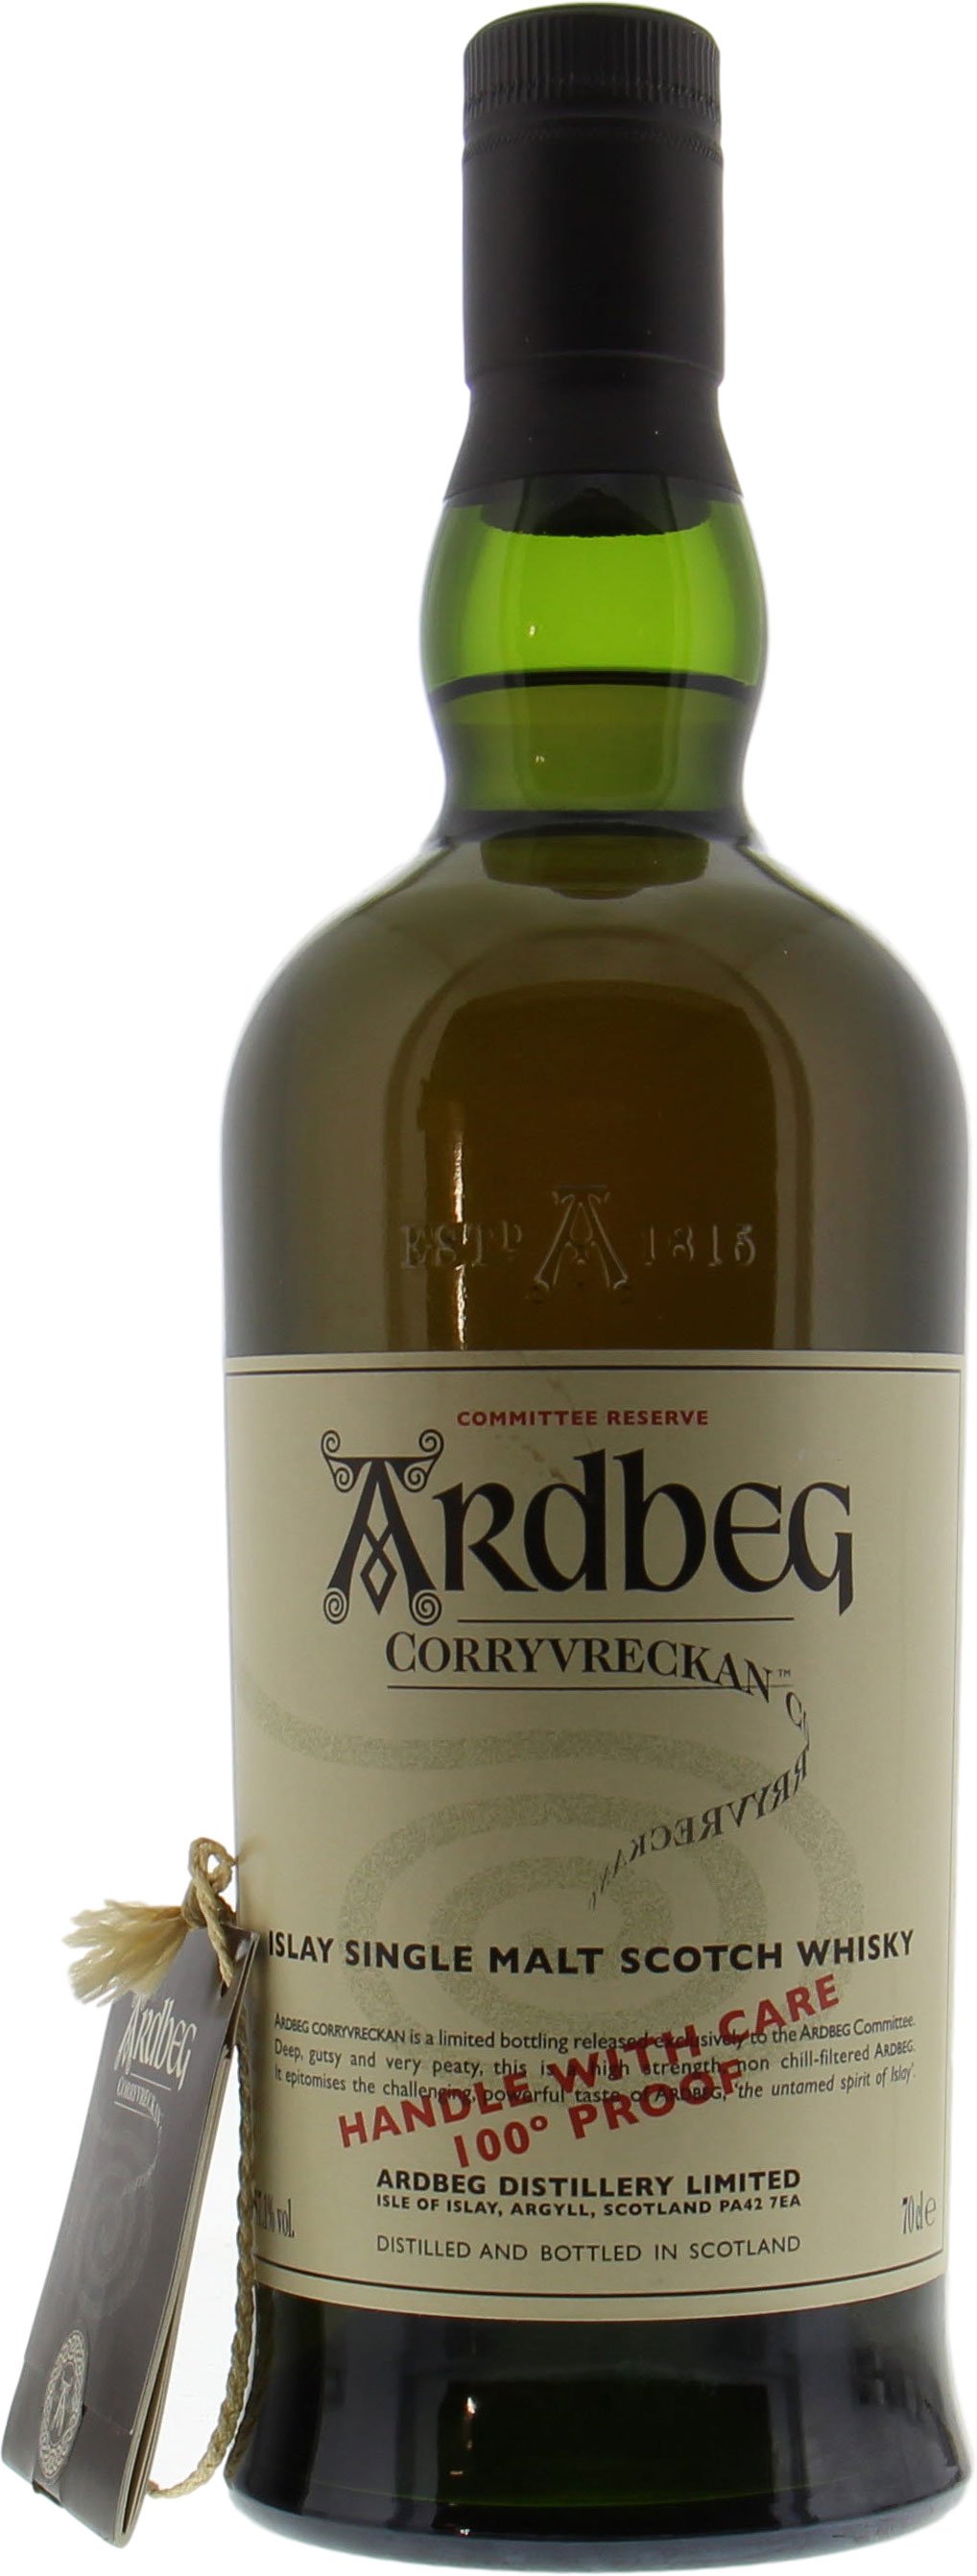 Ardbeg - Corryvreckan Committee Reserve 57.1% NV 10001